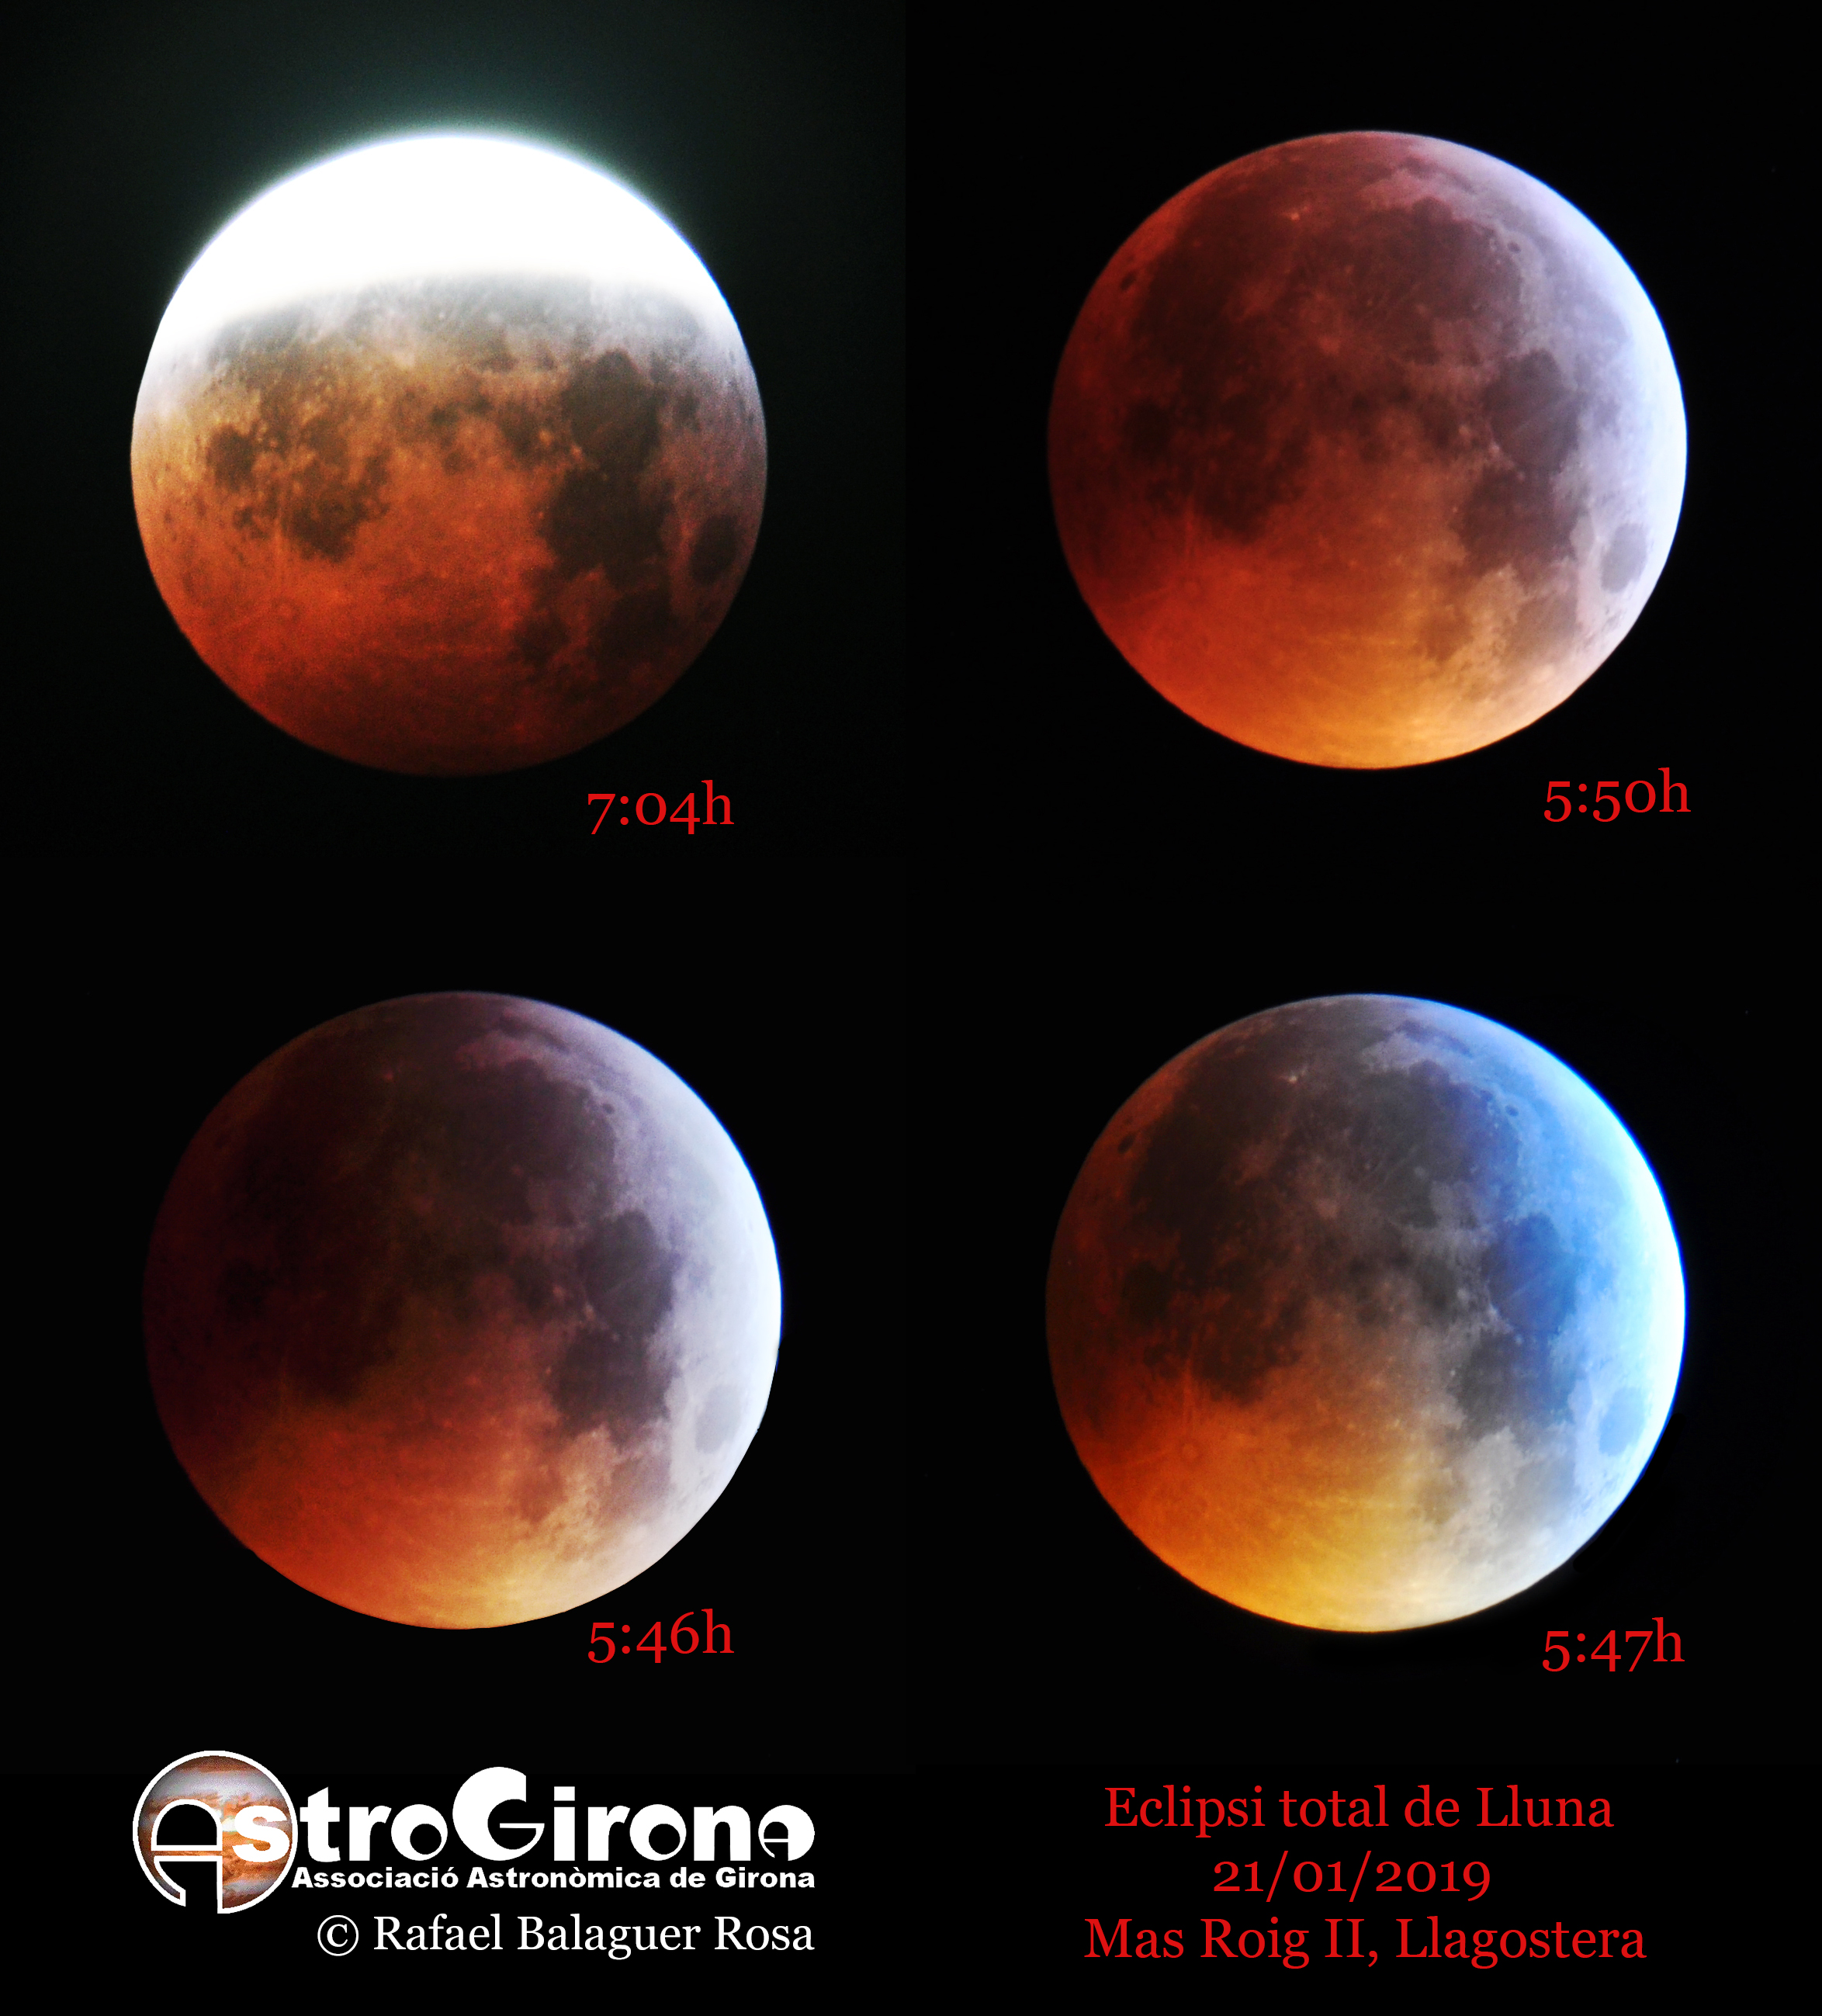 Eclipsi total de Lluna, Rafael Balaguer